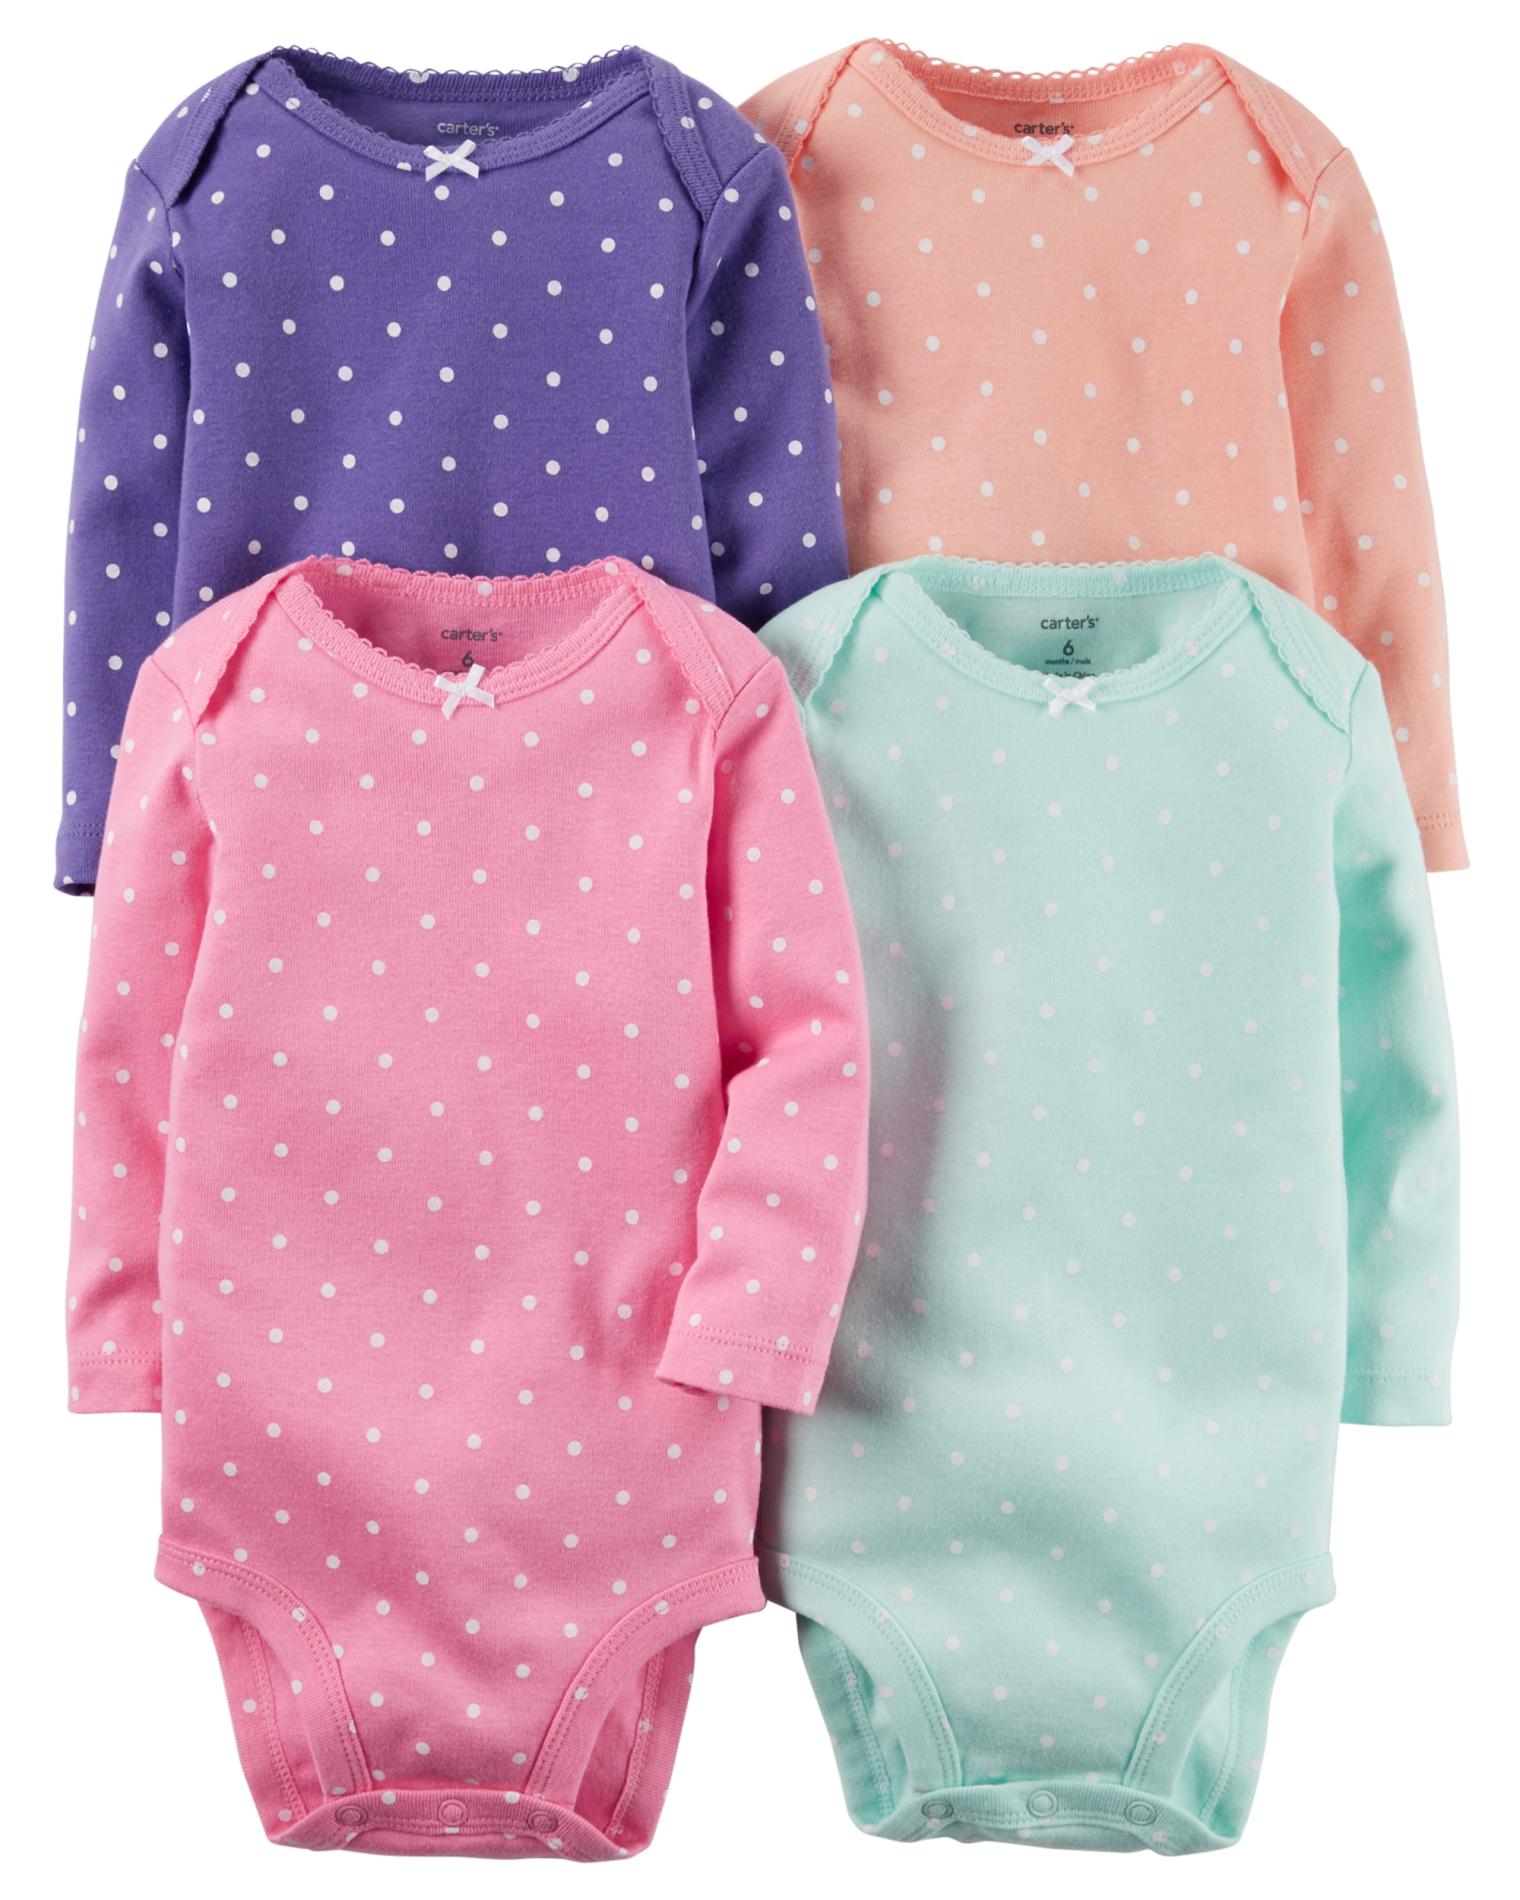 Carter's Newborn & Infants' 4-Pack Long-Sleeve Bodysuit - Polka Dot